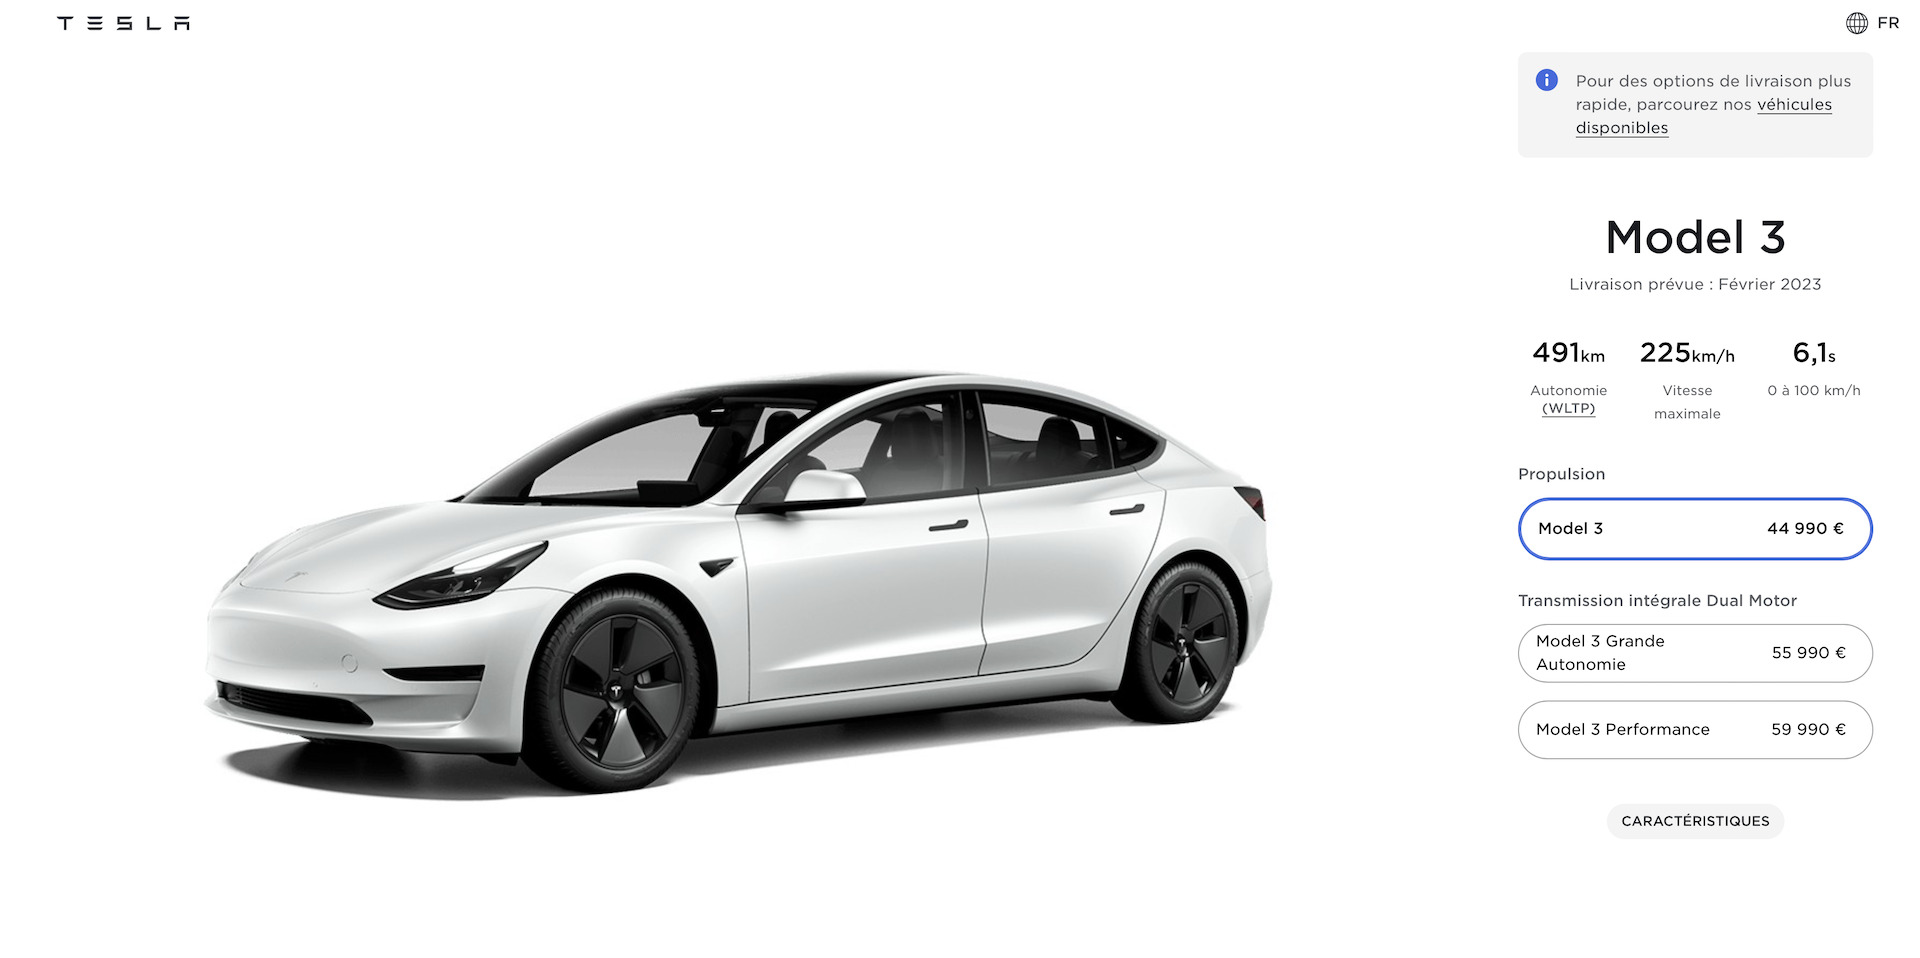 Tesla Model 3 : tout ce qu'il faut savoir sur ses capacités de